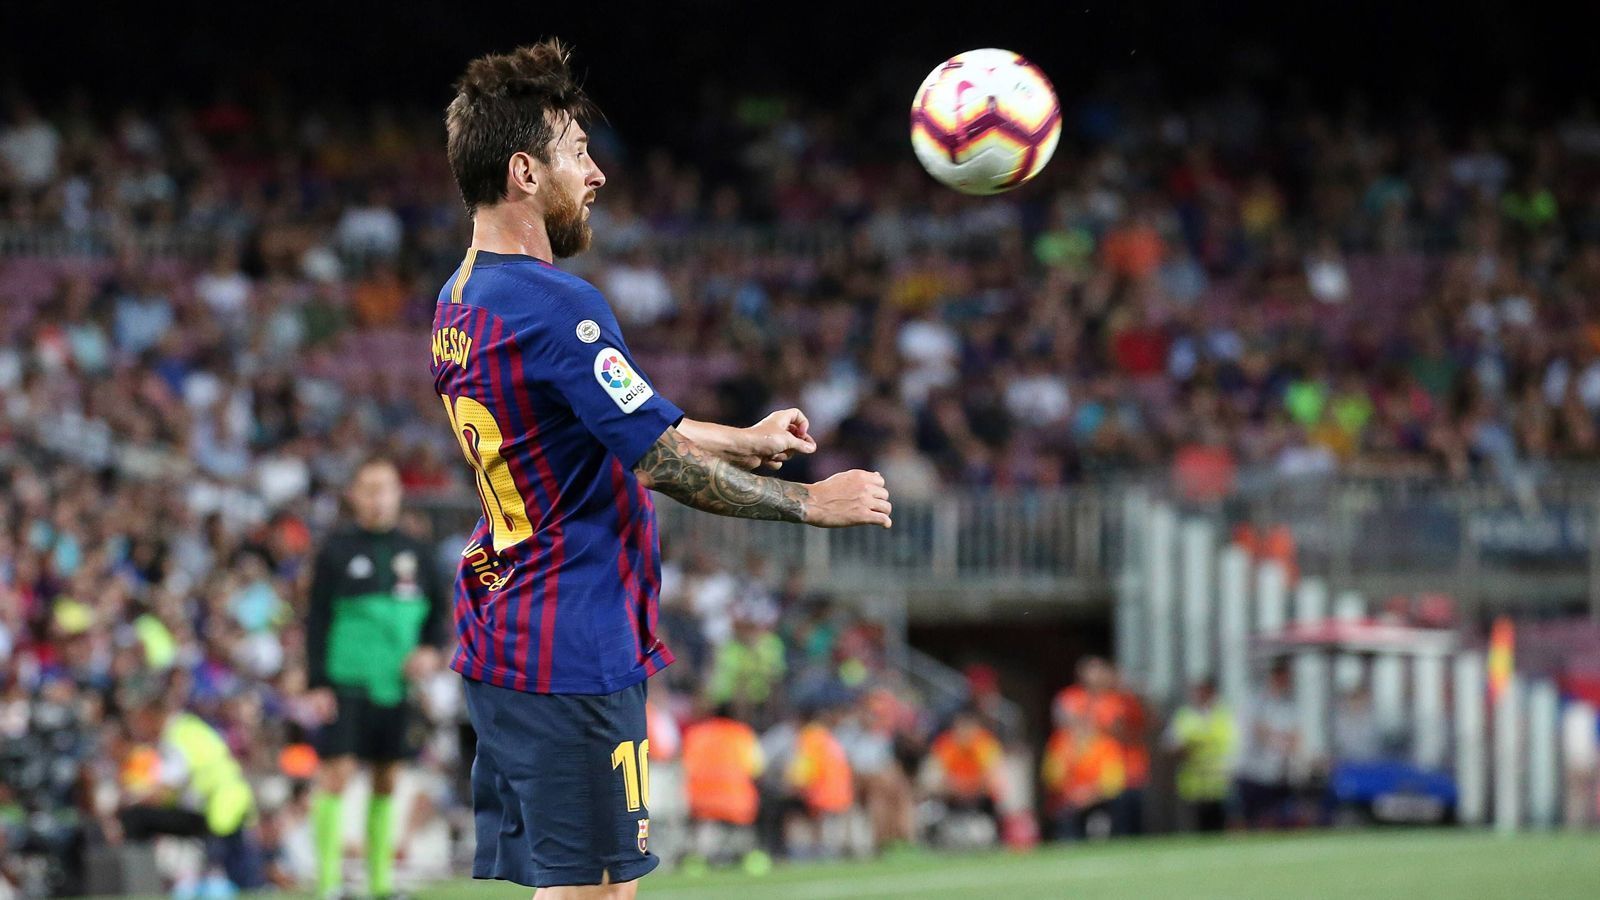 
                <strong>Topf 1: FC Barcelona (Meister in Spanien)</strong><br>
                Größter CL-Erfolg: Sieger 1992, 2006, 2009, 2011, 2015Trainer: Ernesto ValverdeTopstar: Lionel Messi (Bild)
              